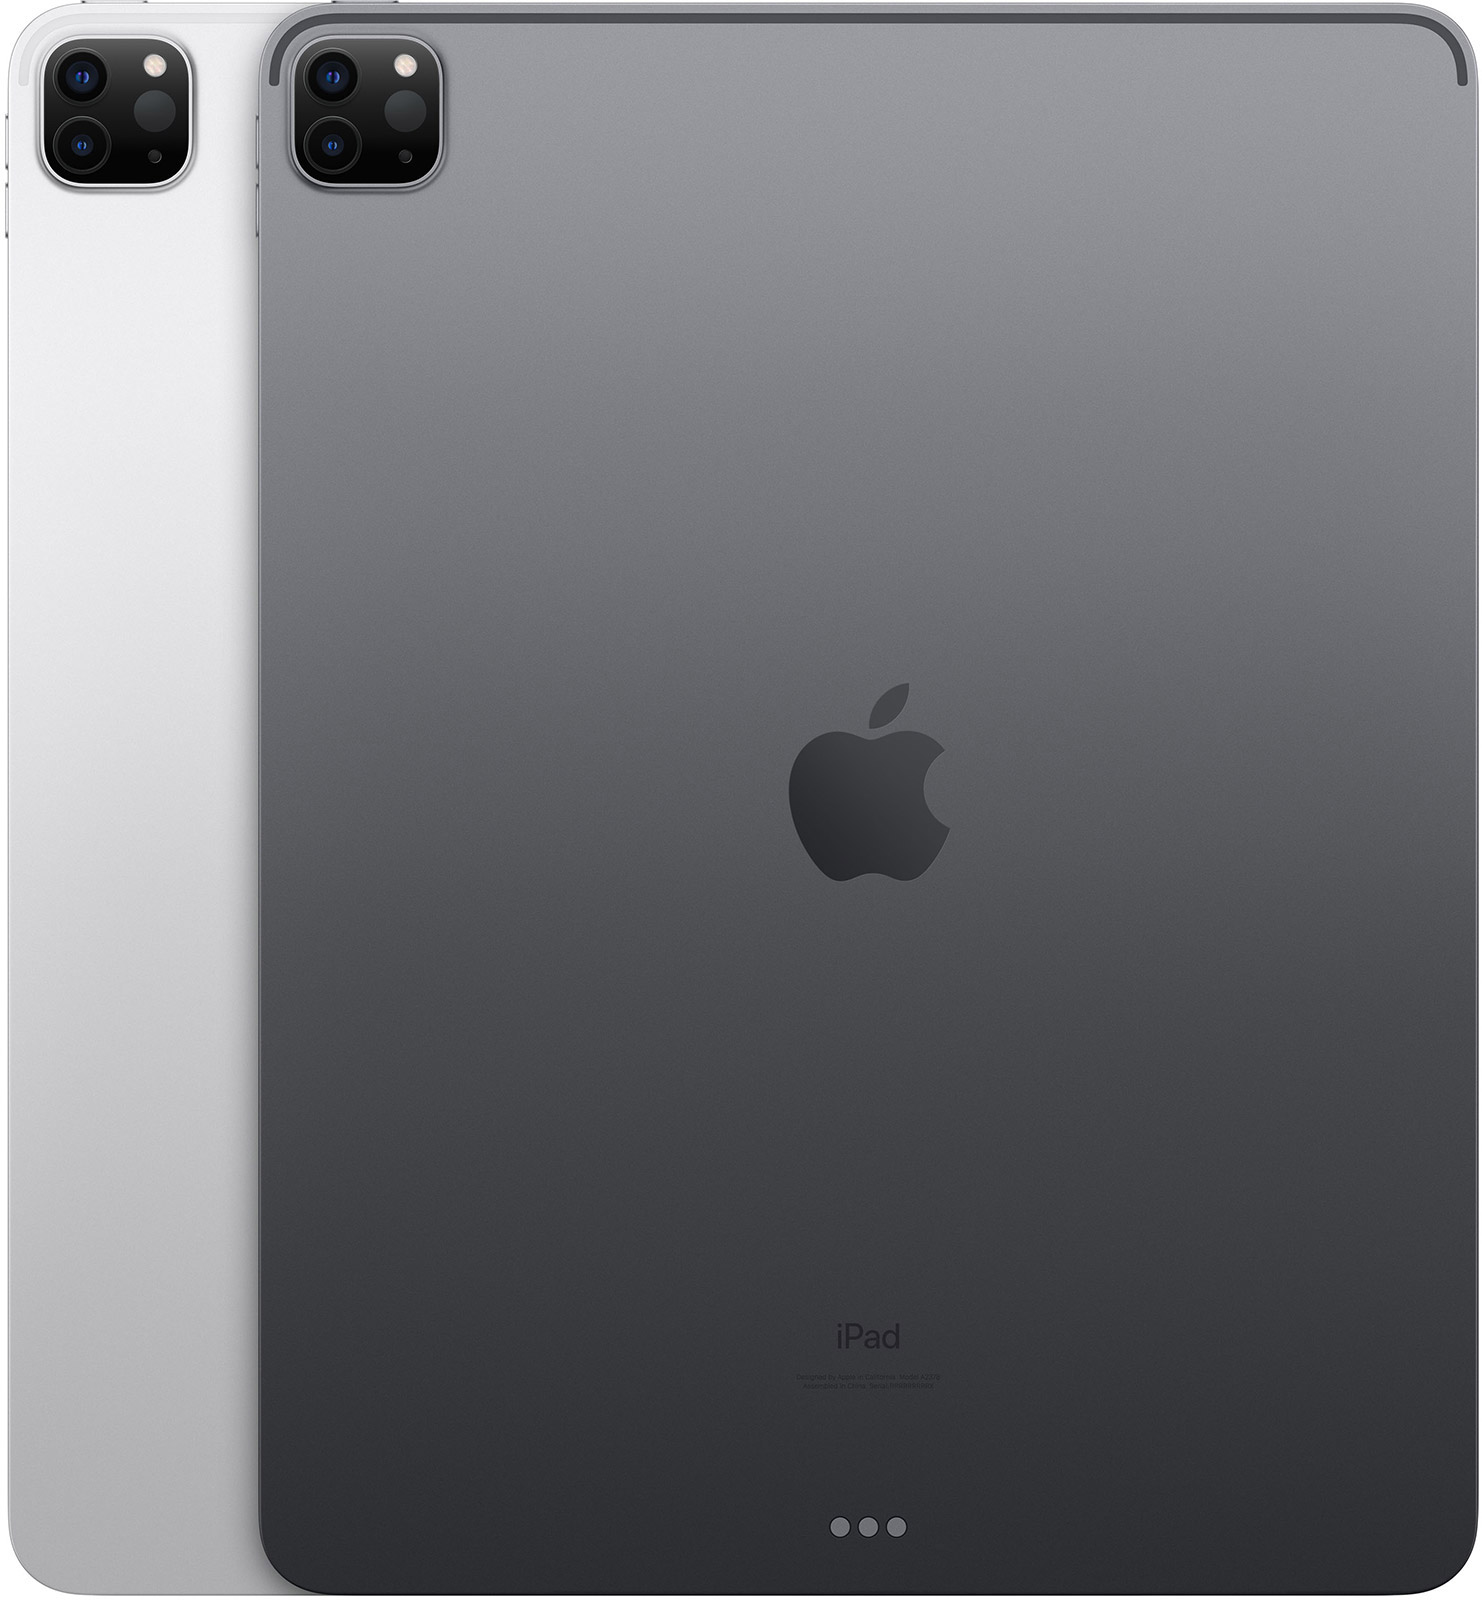 Apple-12-9-iPad-Pro-WiFi-256-GB-Space-Grau-2021-08.jpg